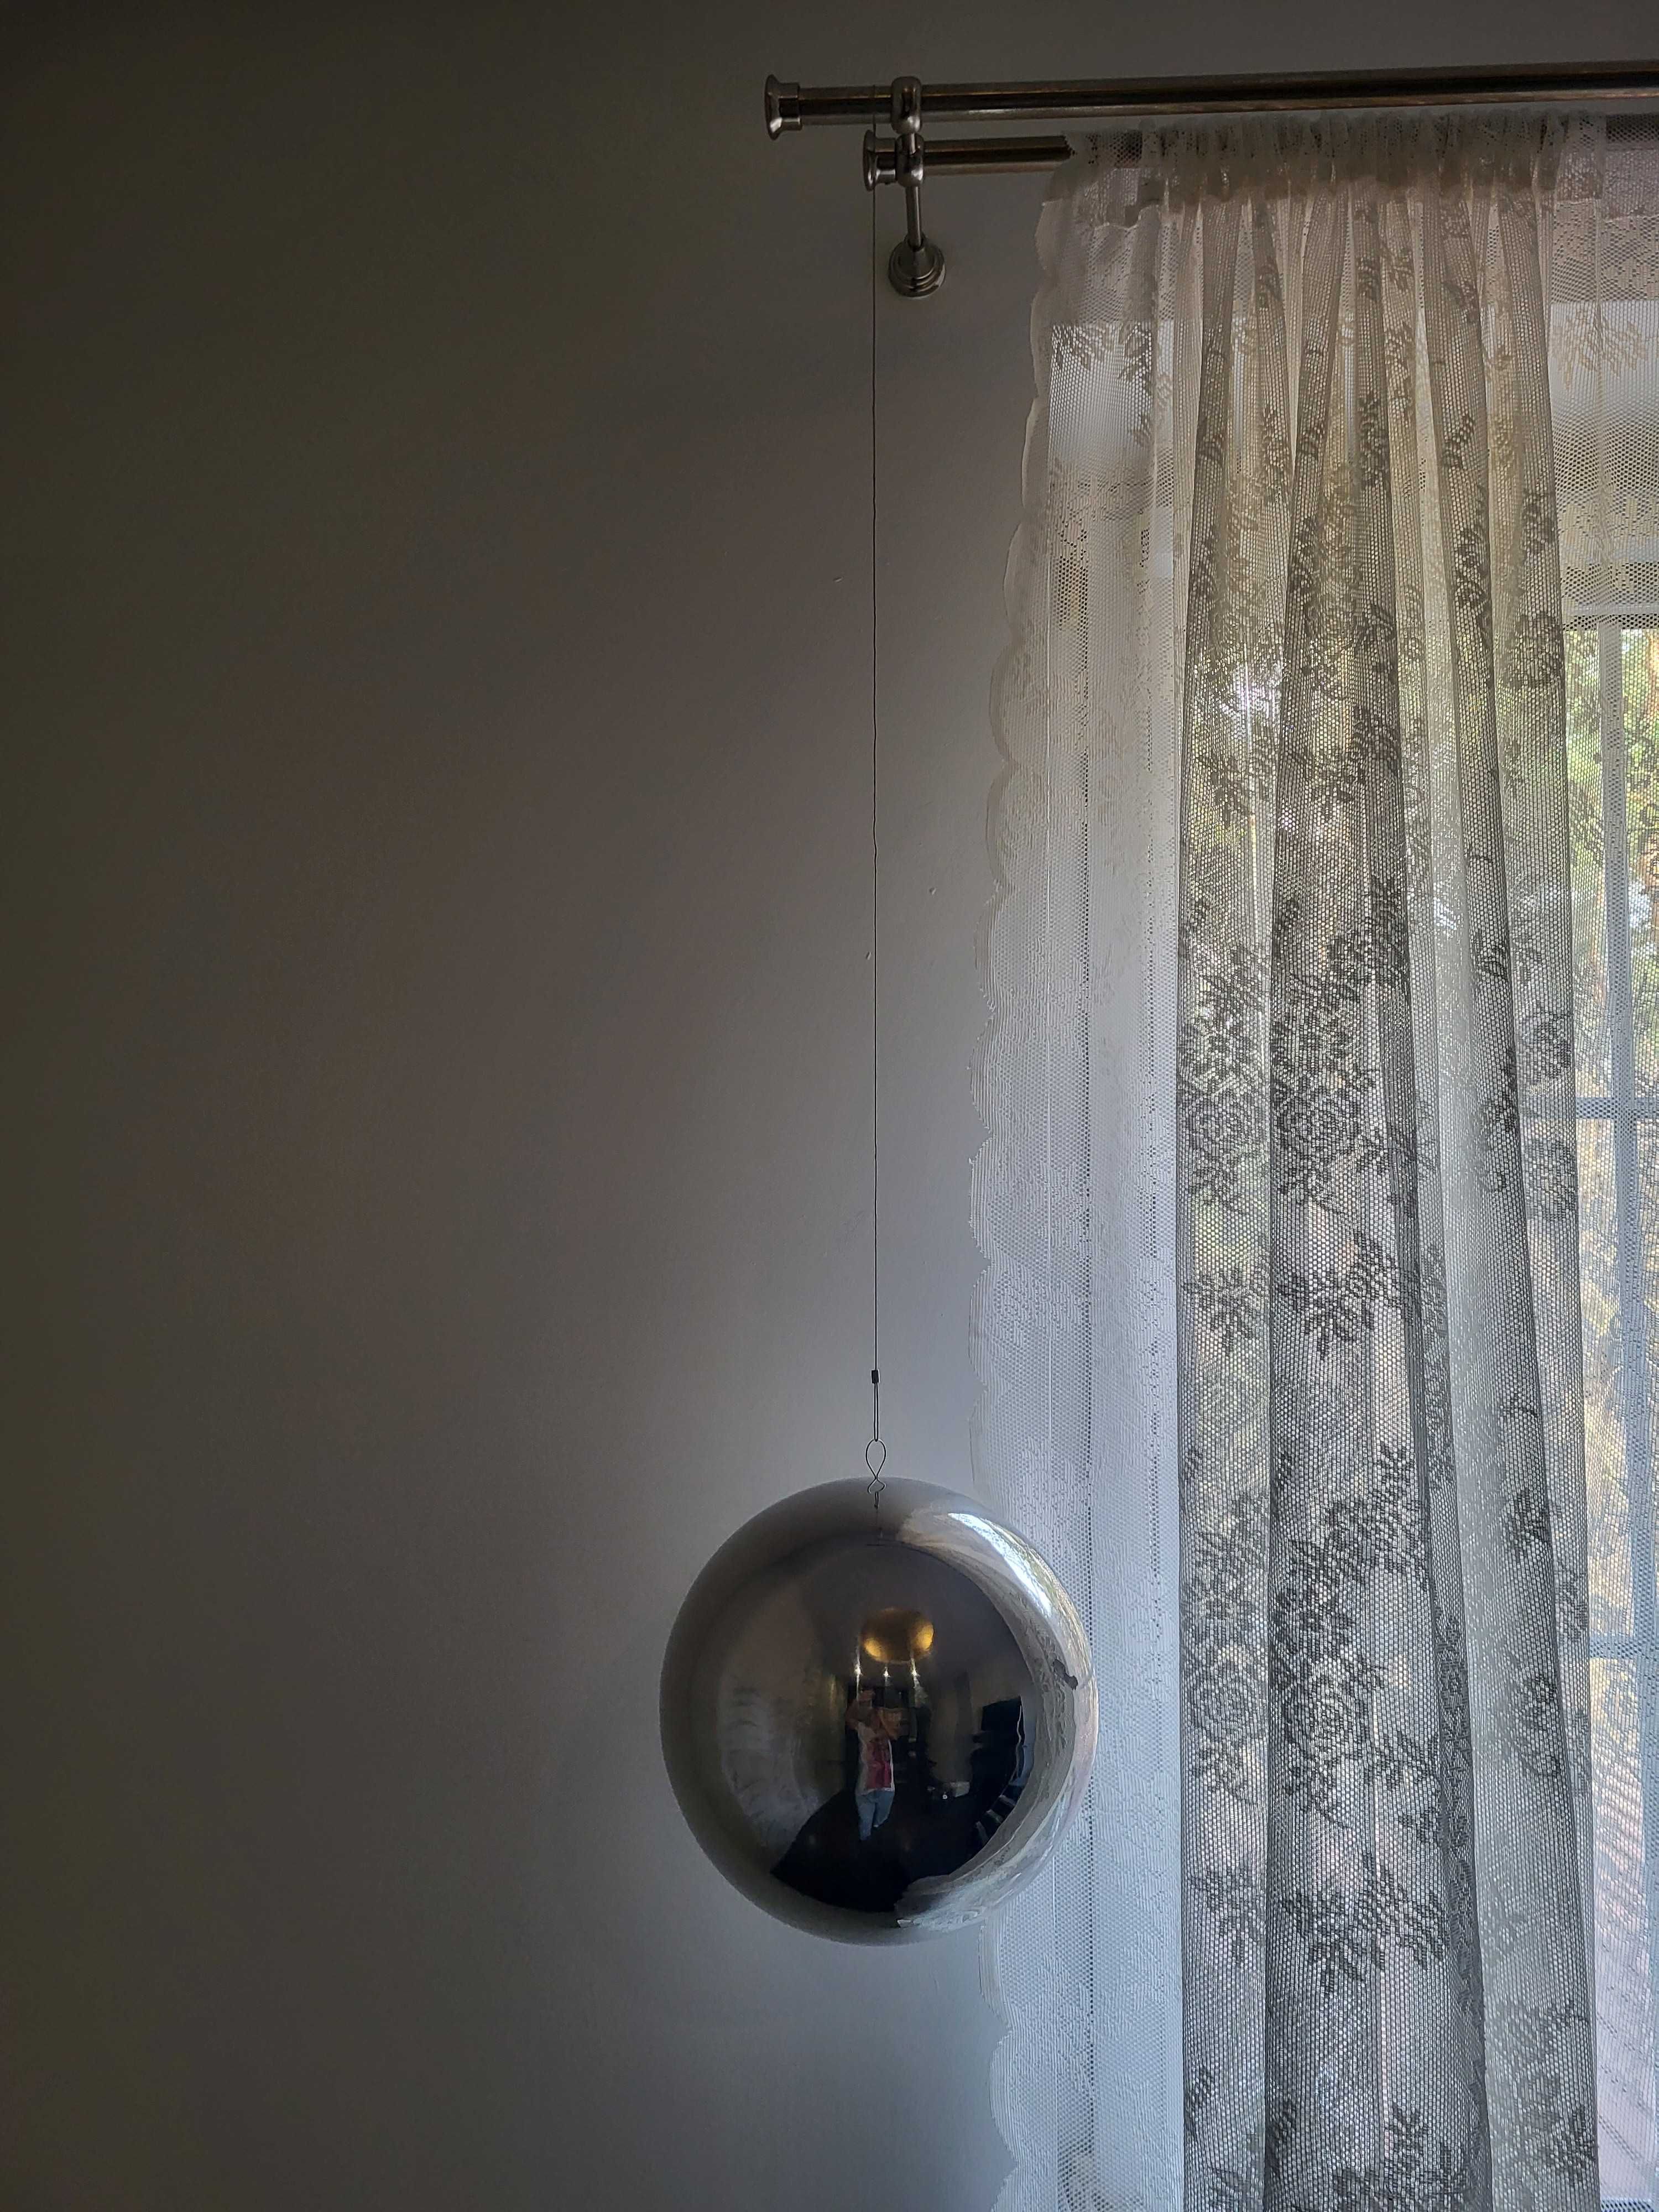 Duża kula do powieszenia do okna srebrna obwód 74,5 cm j.nowa